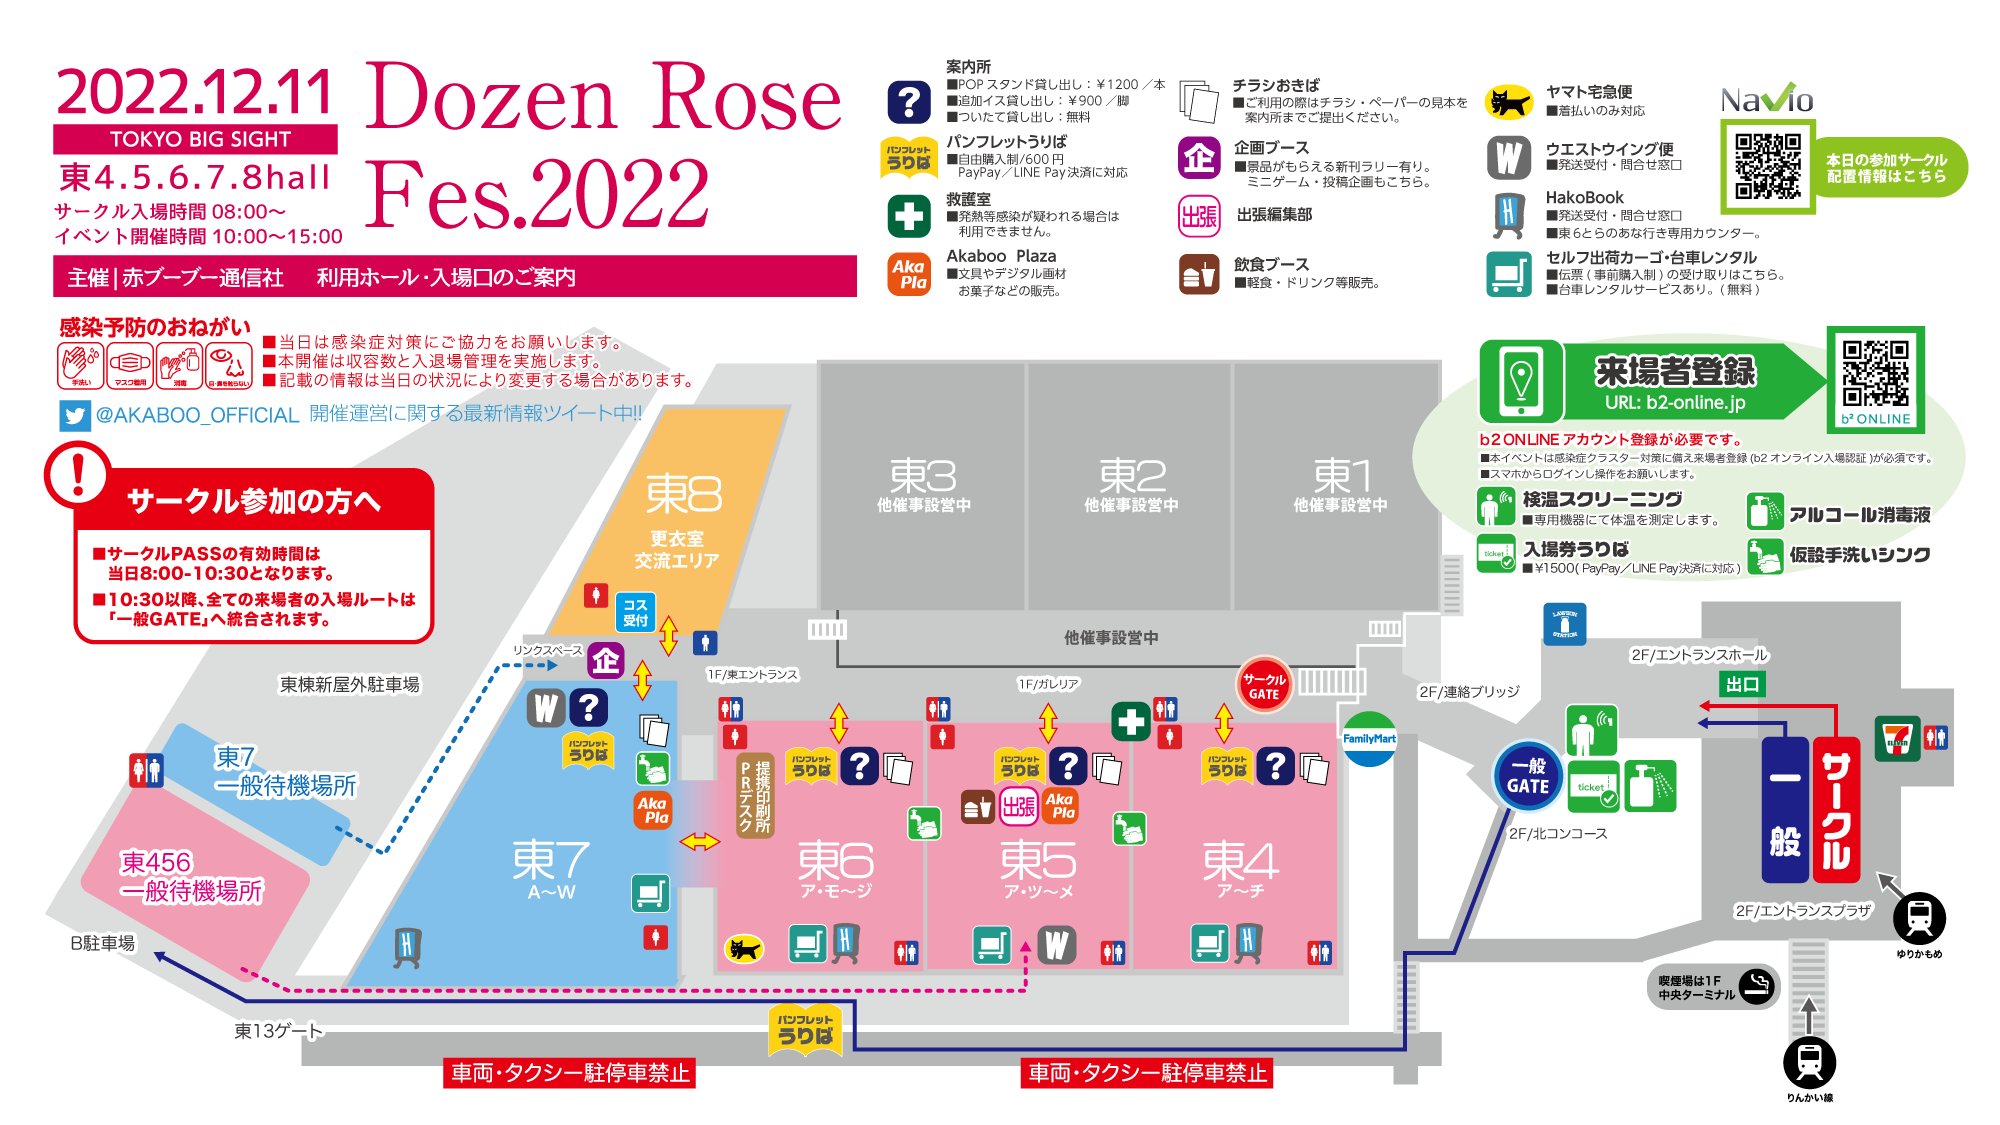 Dozen Rose FES 2023 12/17 サーチケ  【即購入対応】